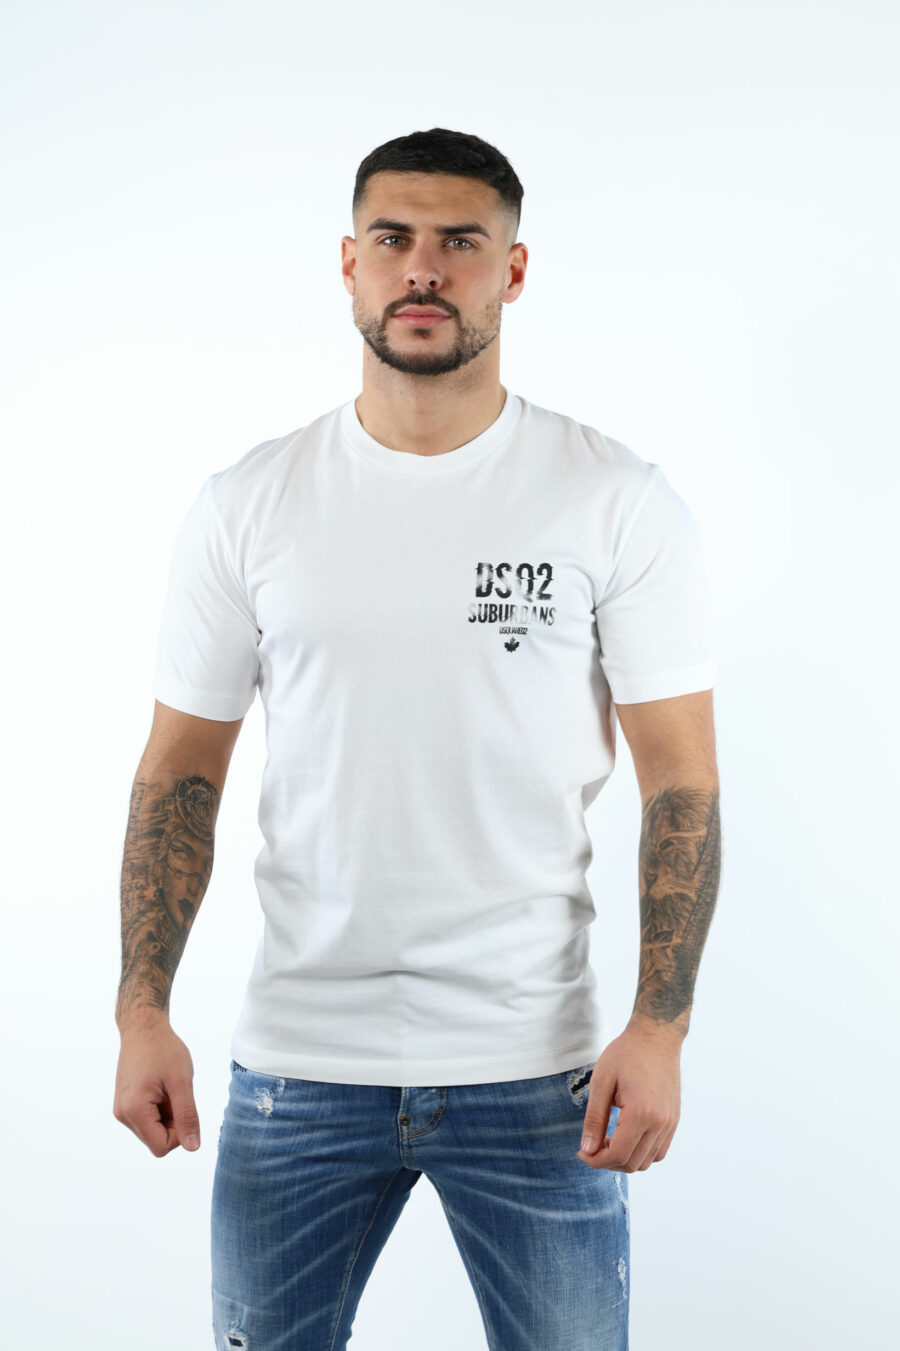 T-Shirt weiß mit minilogue "suburbans" schwarz - 106623